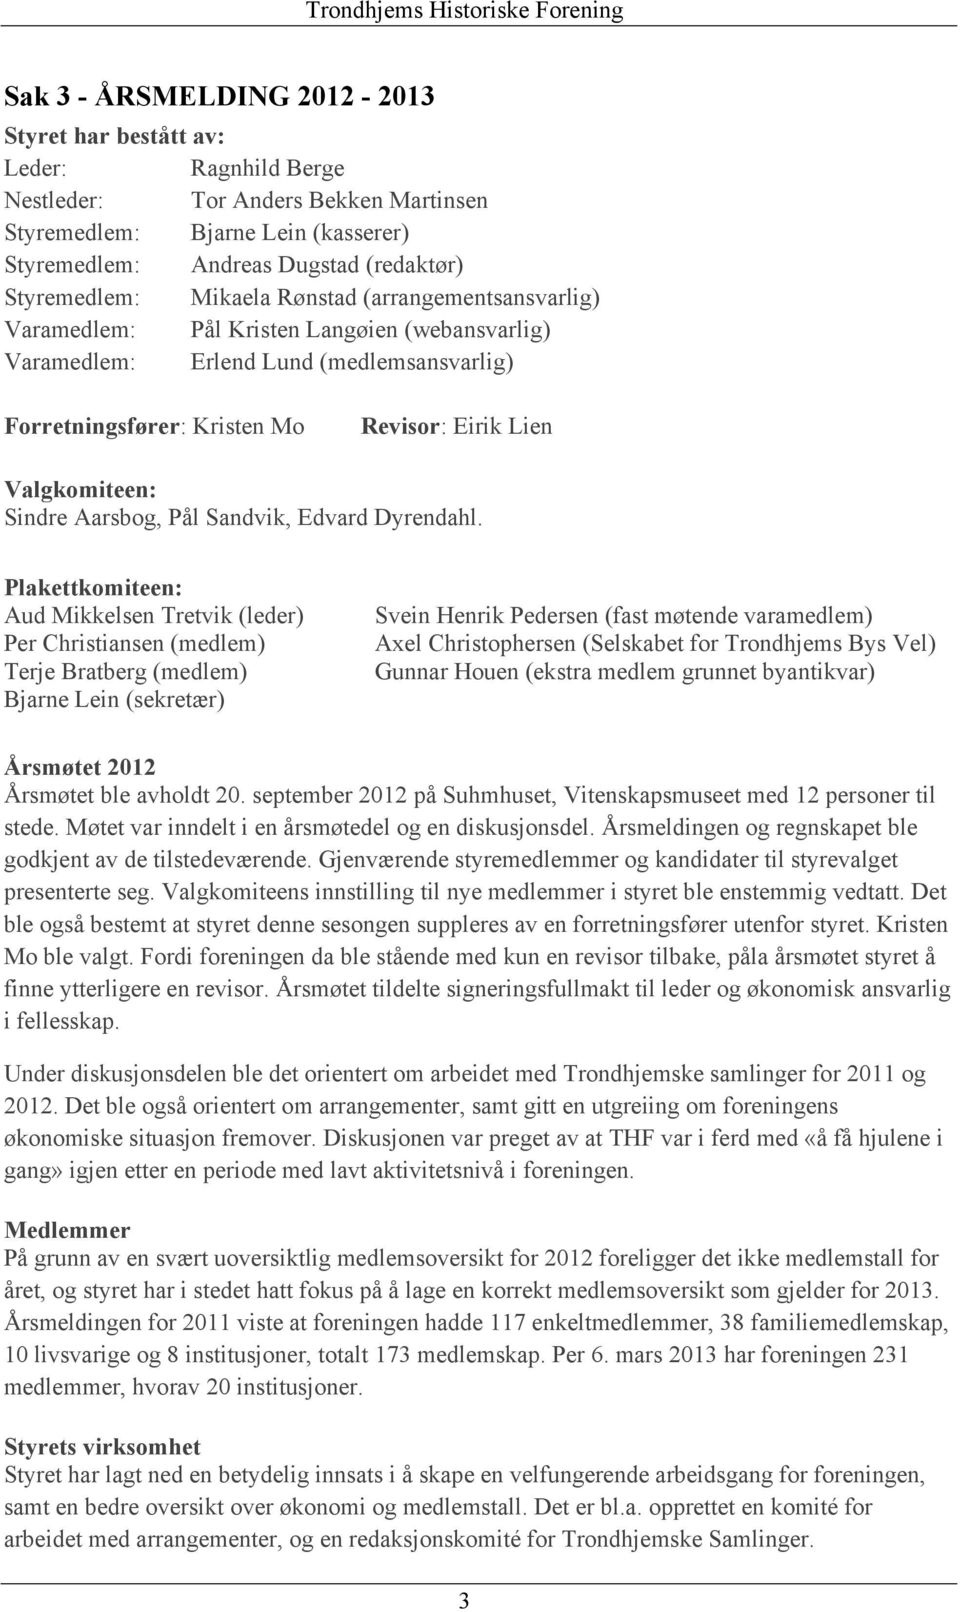 Valgkomiteen: Sindre Aarsbog, Pål Sandvik, Edvard Dyrendahl.